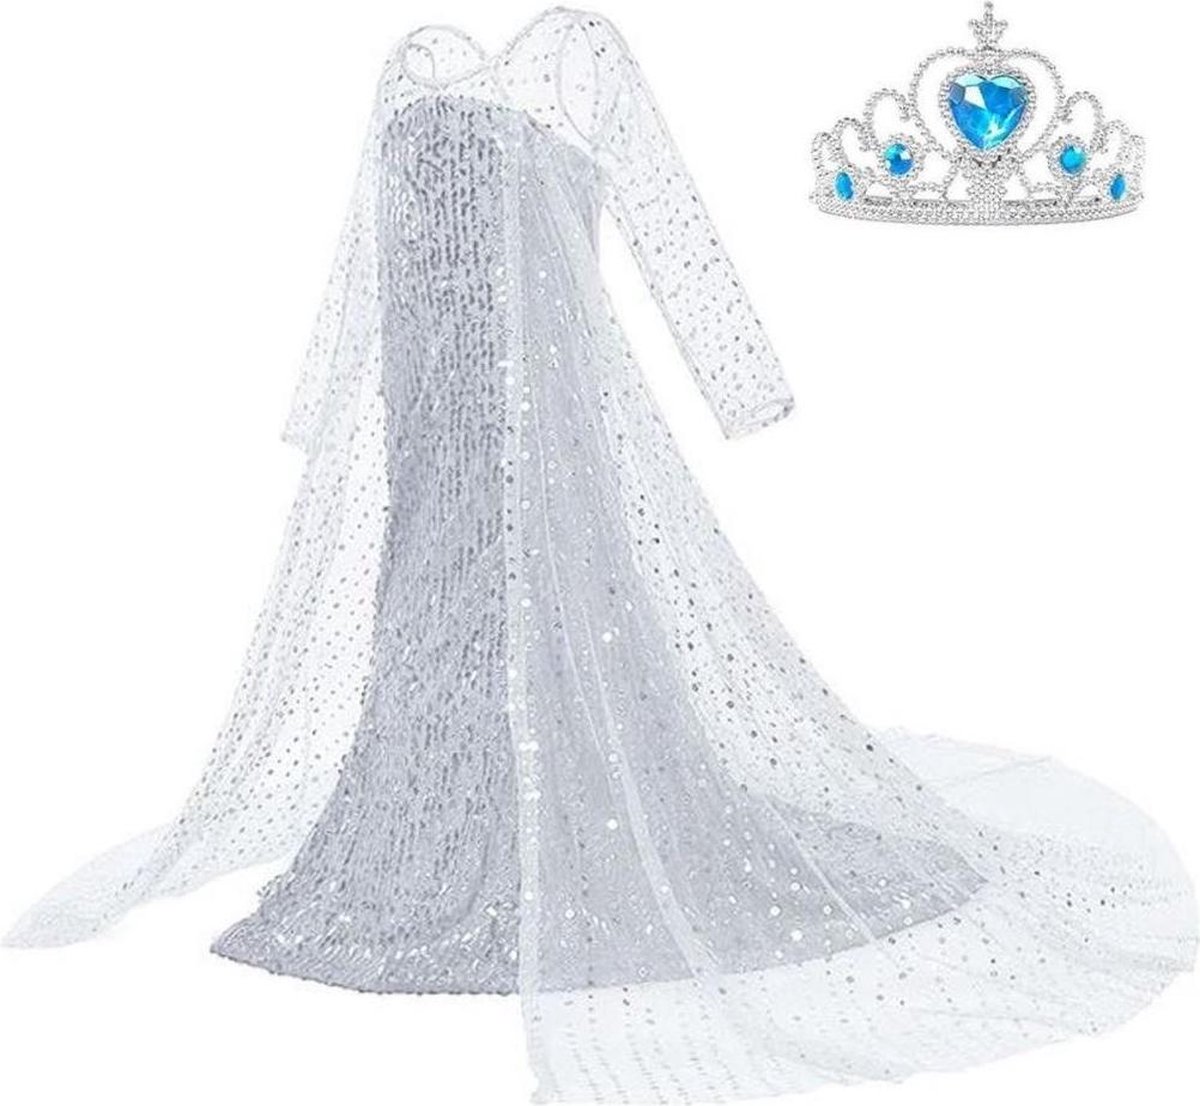 Frozen 2 Elsa jurk IJskoningin Deluxe met lange sleep 134-140 (150) + kroon Prinsessen jurk verkleedkleding